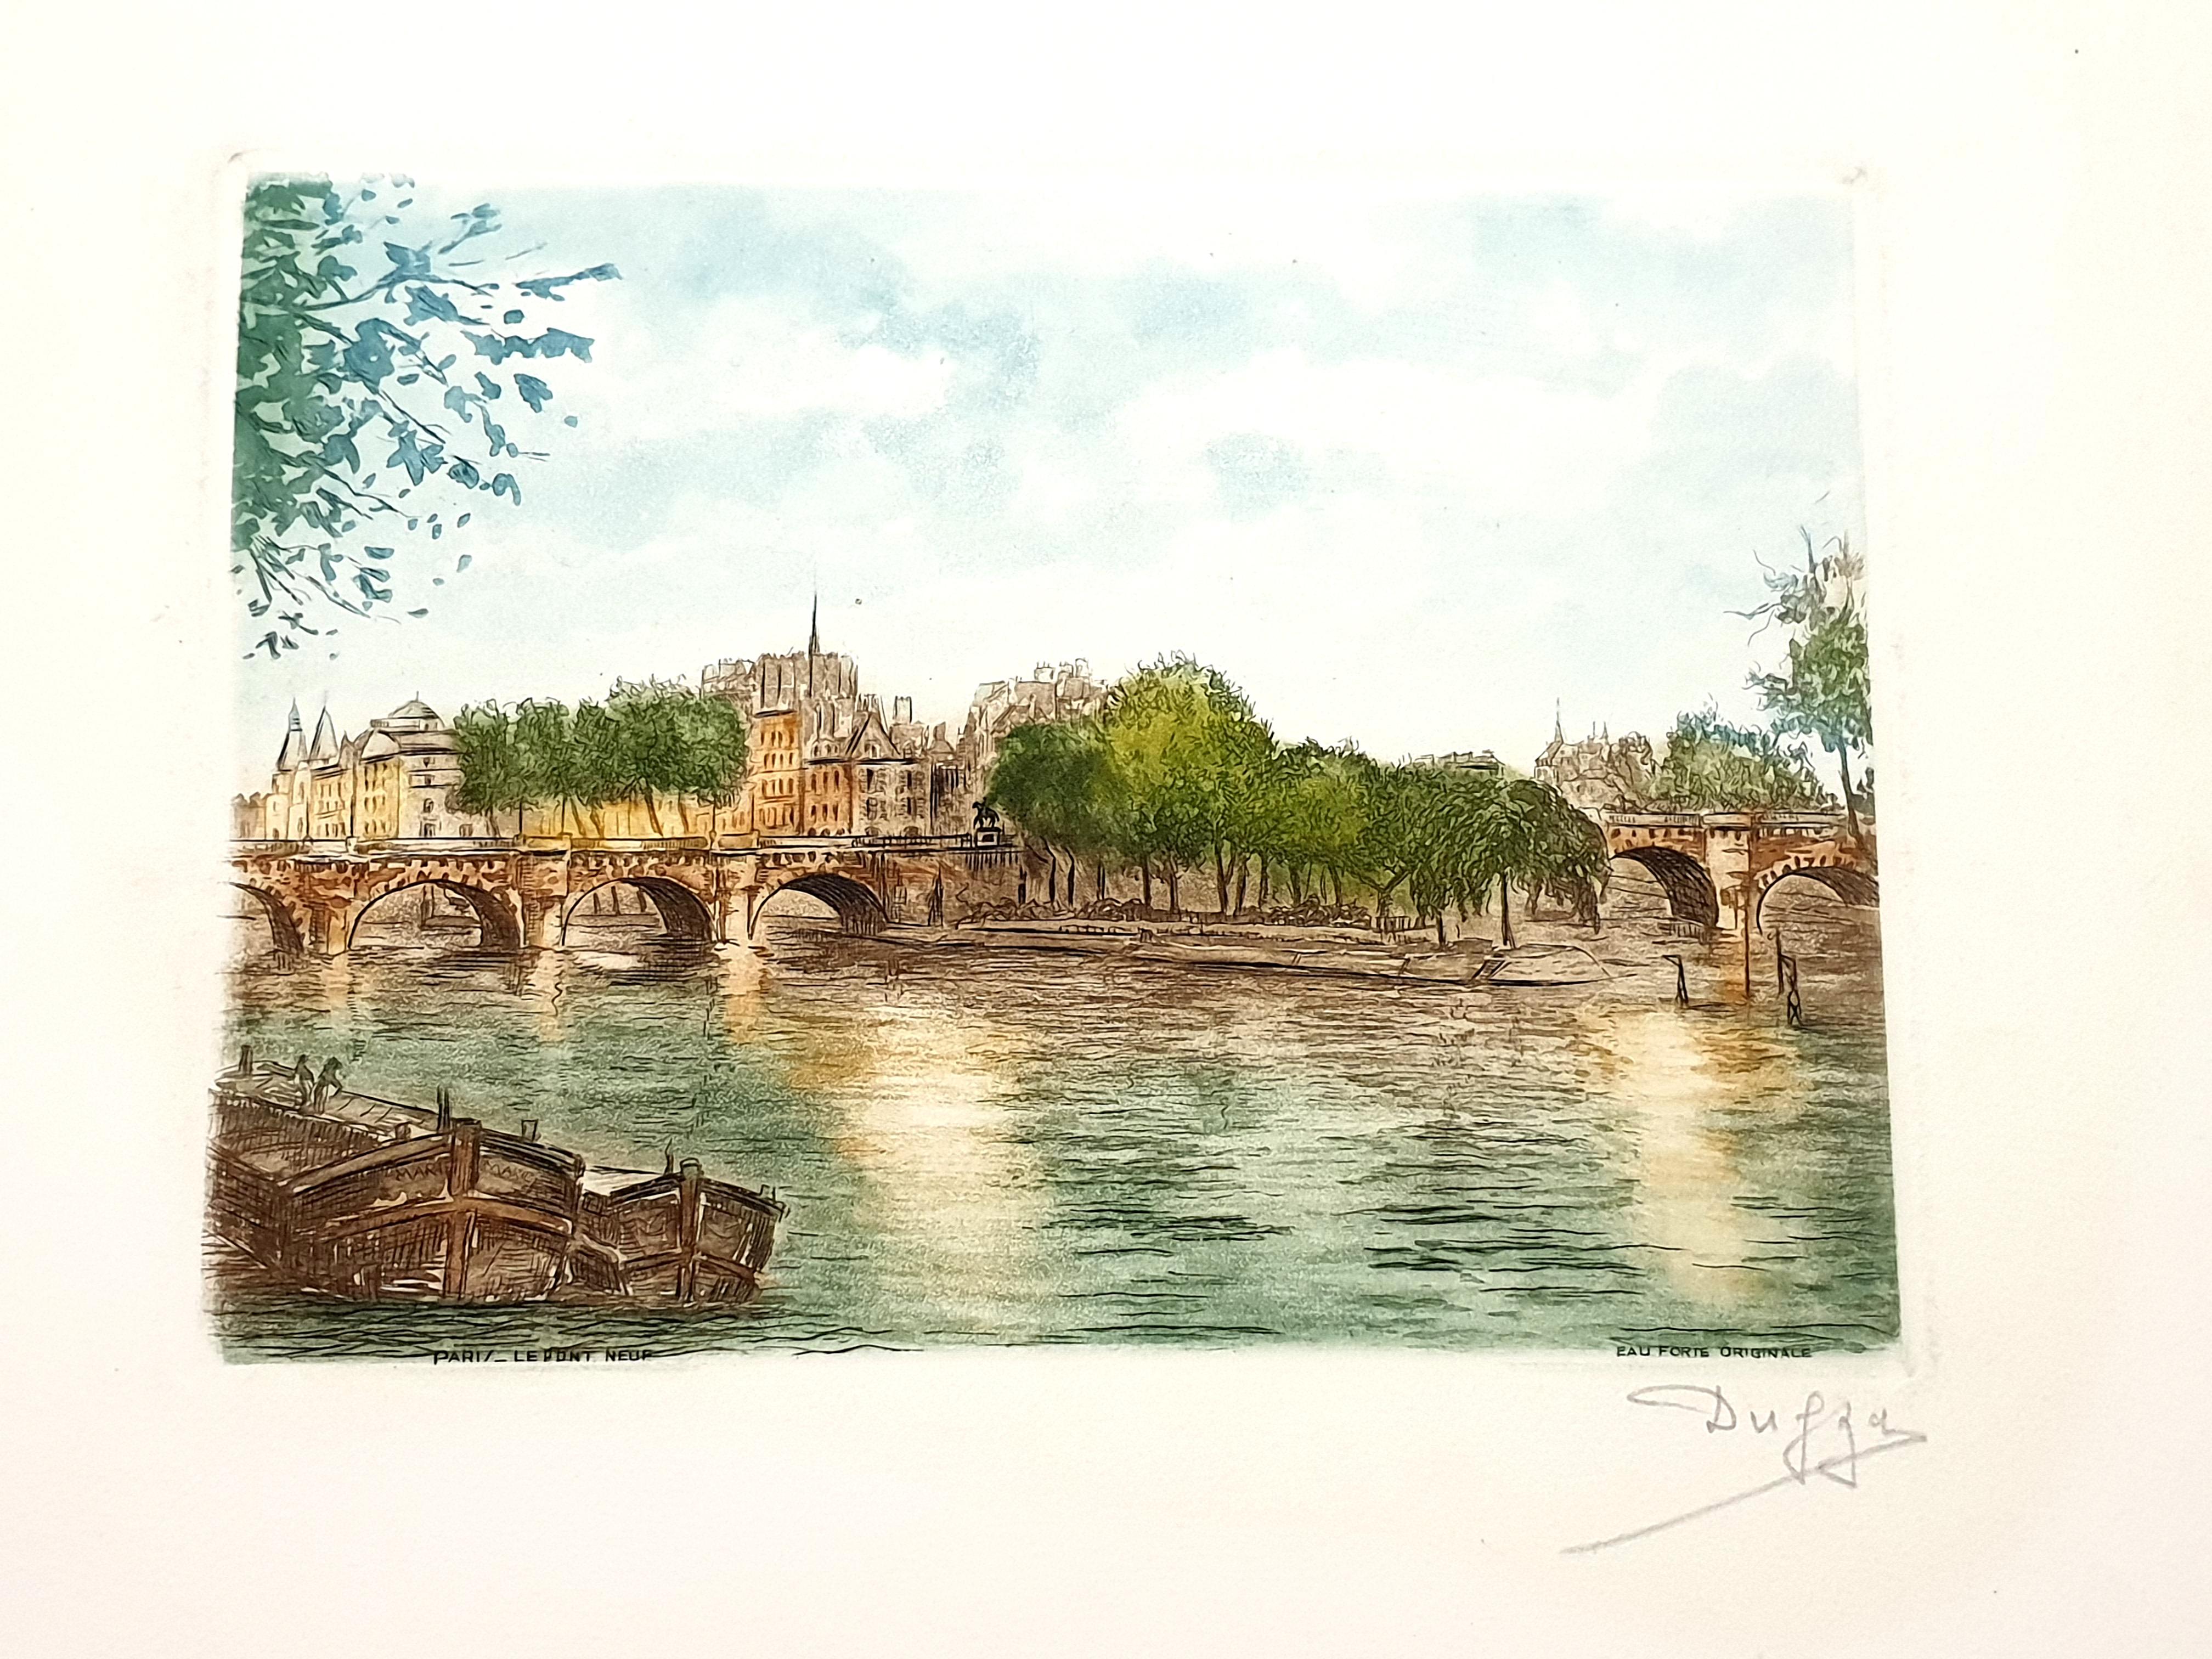 Dufza - Paris - Le Pont Neuf - Gravure originale signée à la main
Circa 1940
Signé à la main au crayon
Dimensions : 20 x 25 cm
Non numérotés comme émis  